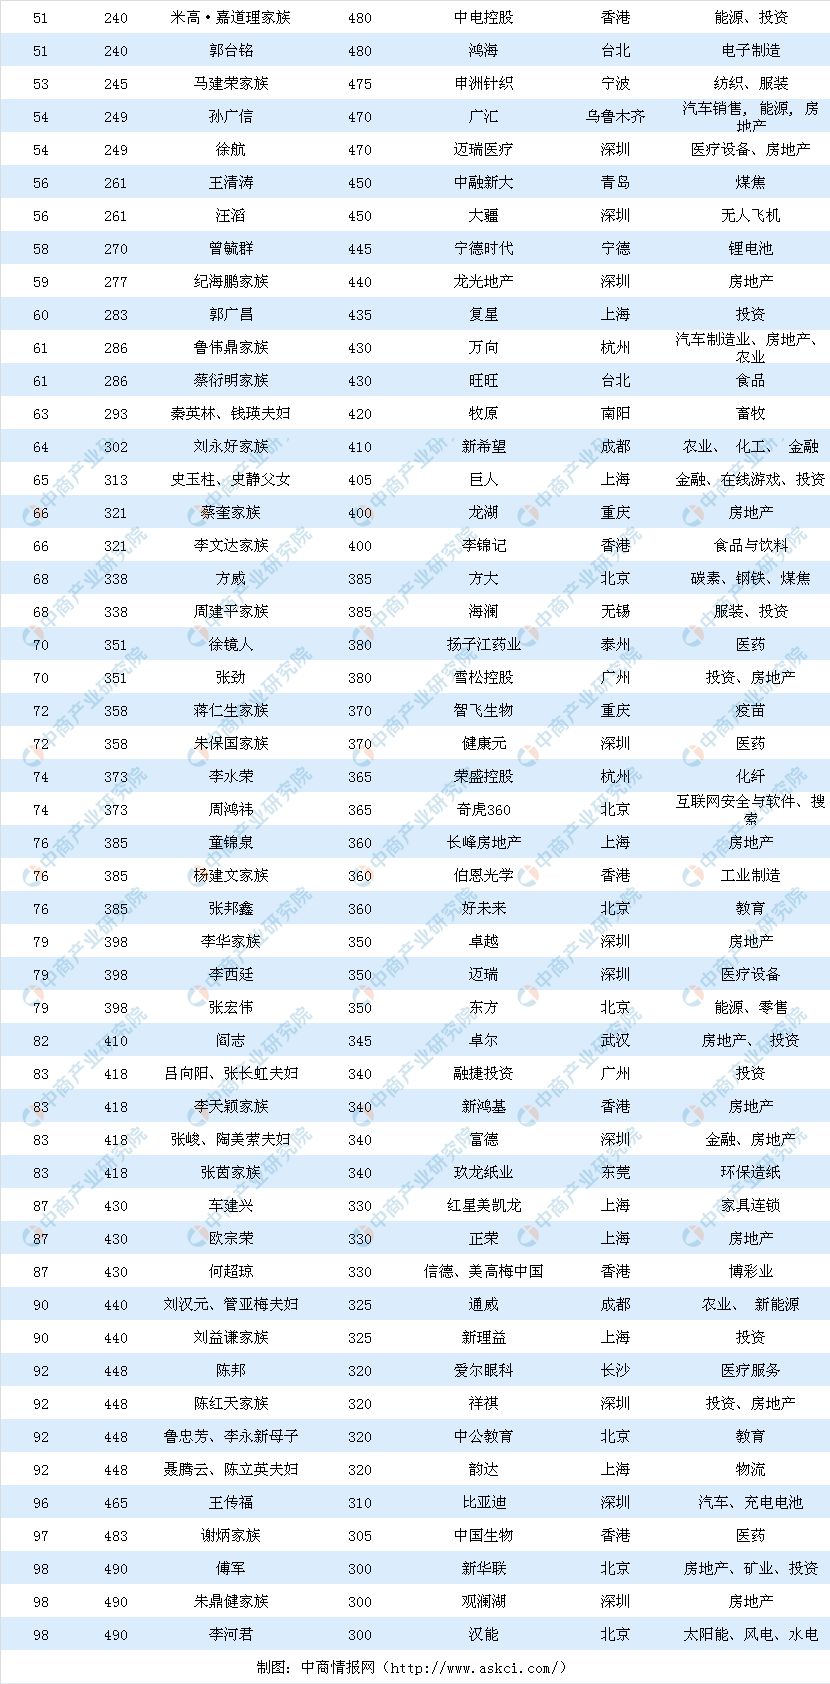 2019中国富人排行榜_2019中国富人榜出炉 南京大佬排名